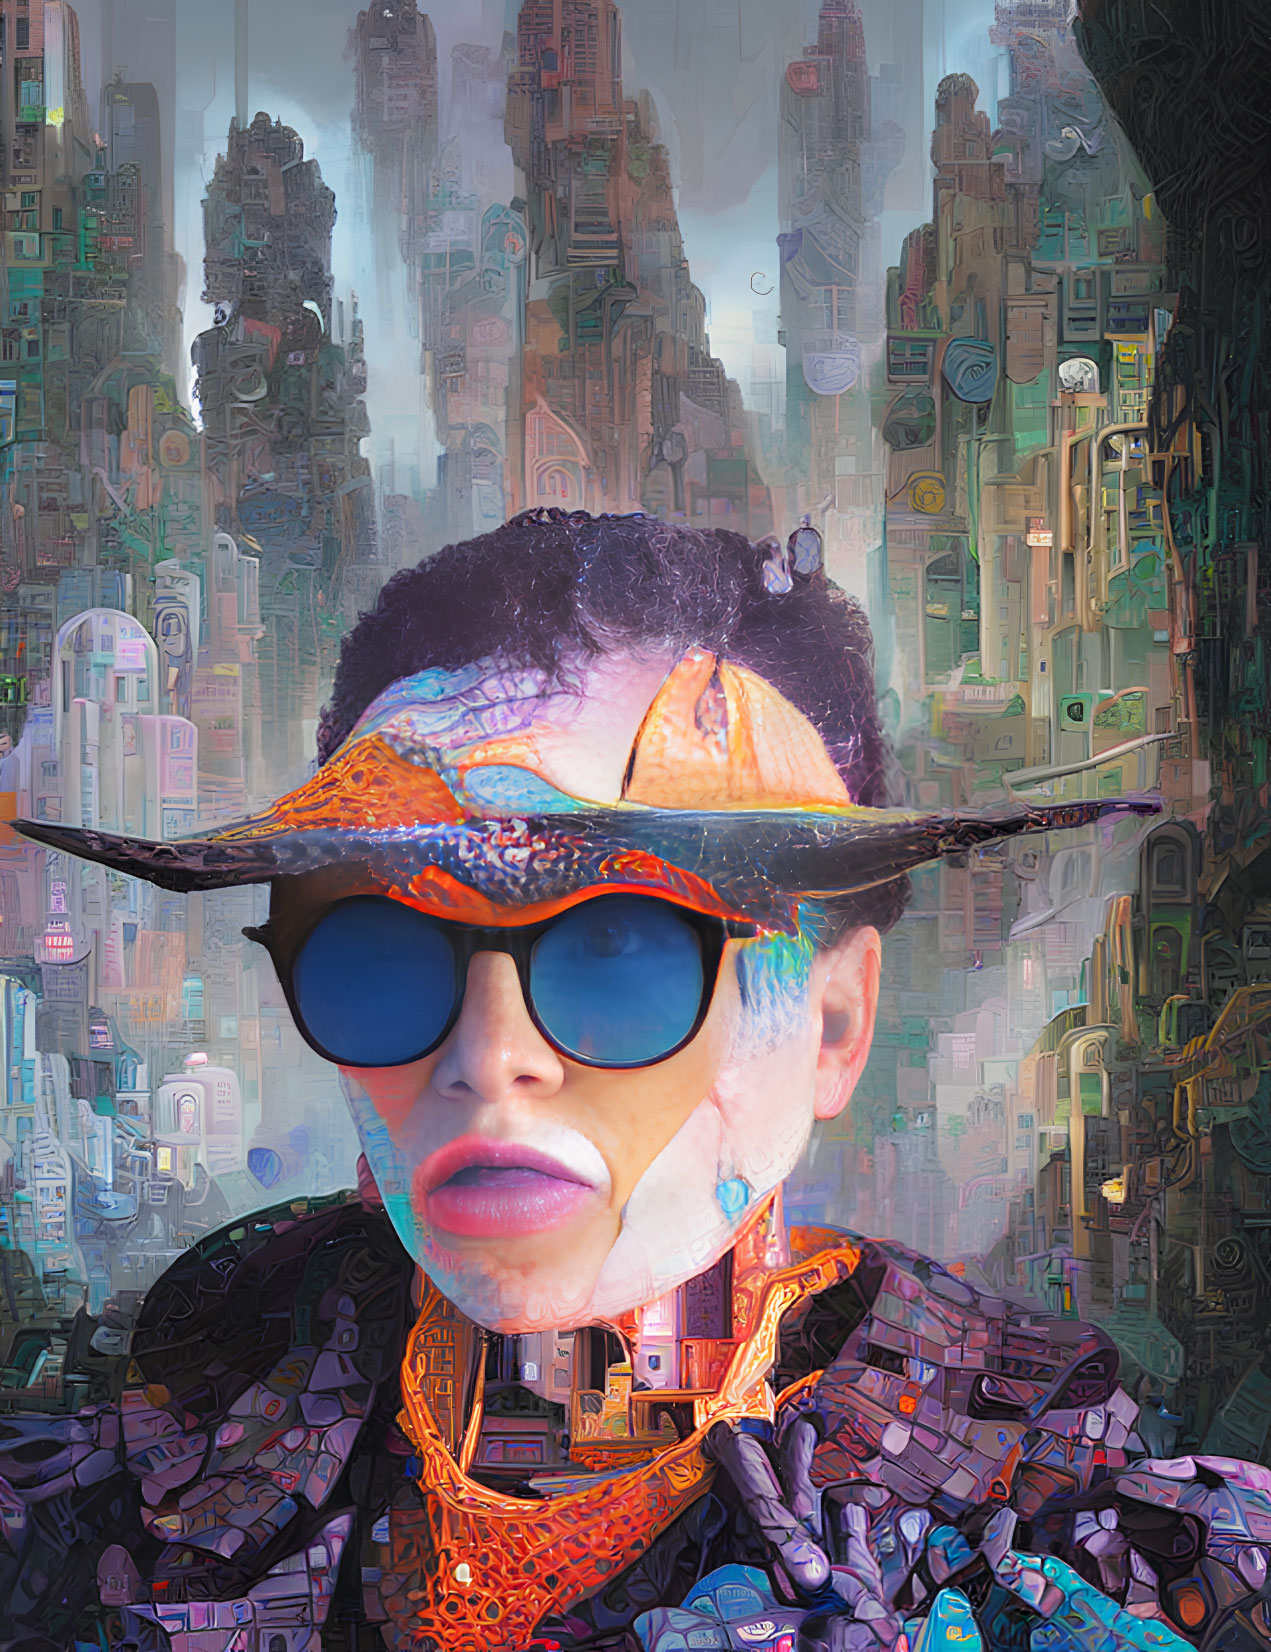 Vibrant digital portrait with blue sunglasses and eclectic attire in futuristic cityscape